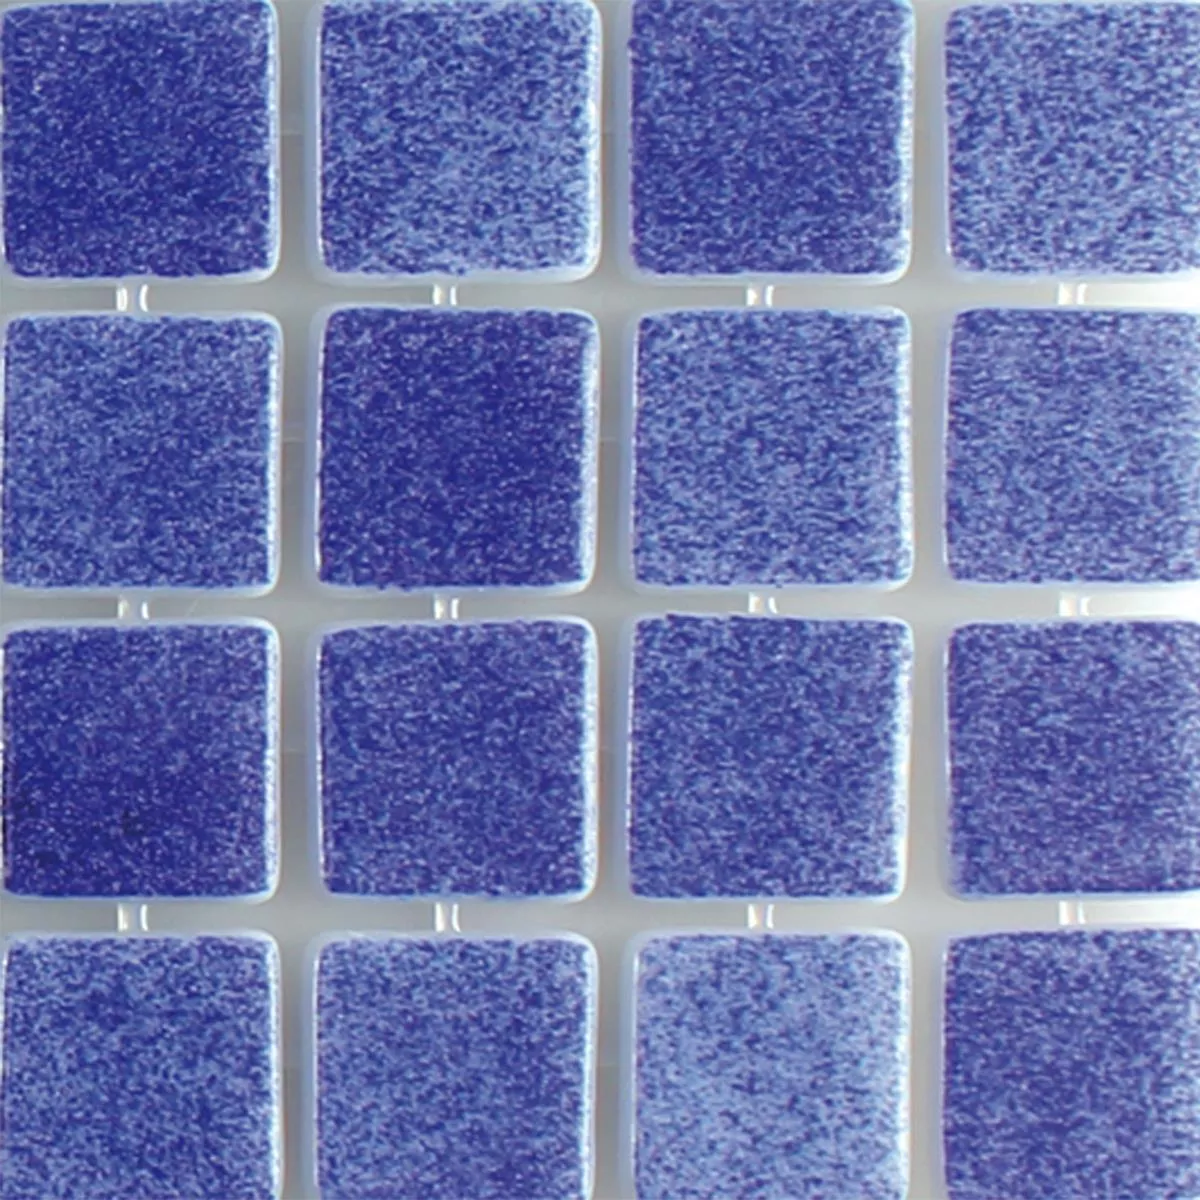 Próbka Szkło Basenowa Mozaika Lagune R11C Ciemnoniebieski